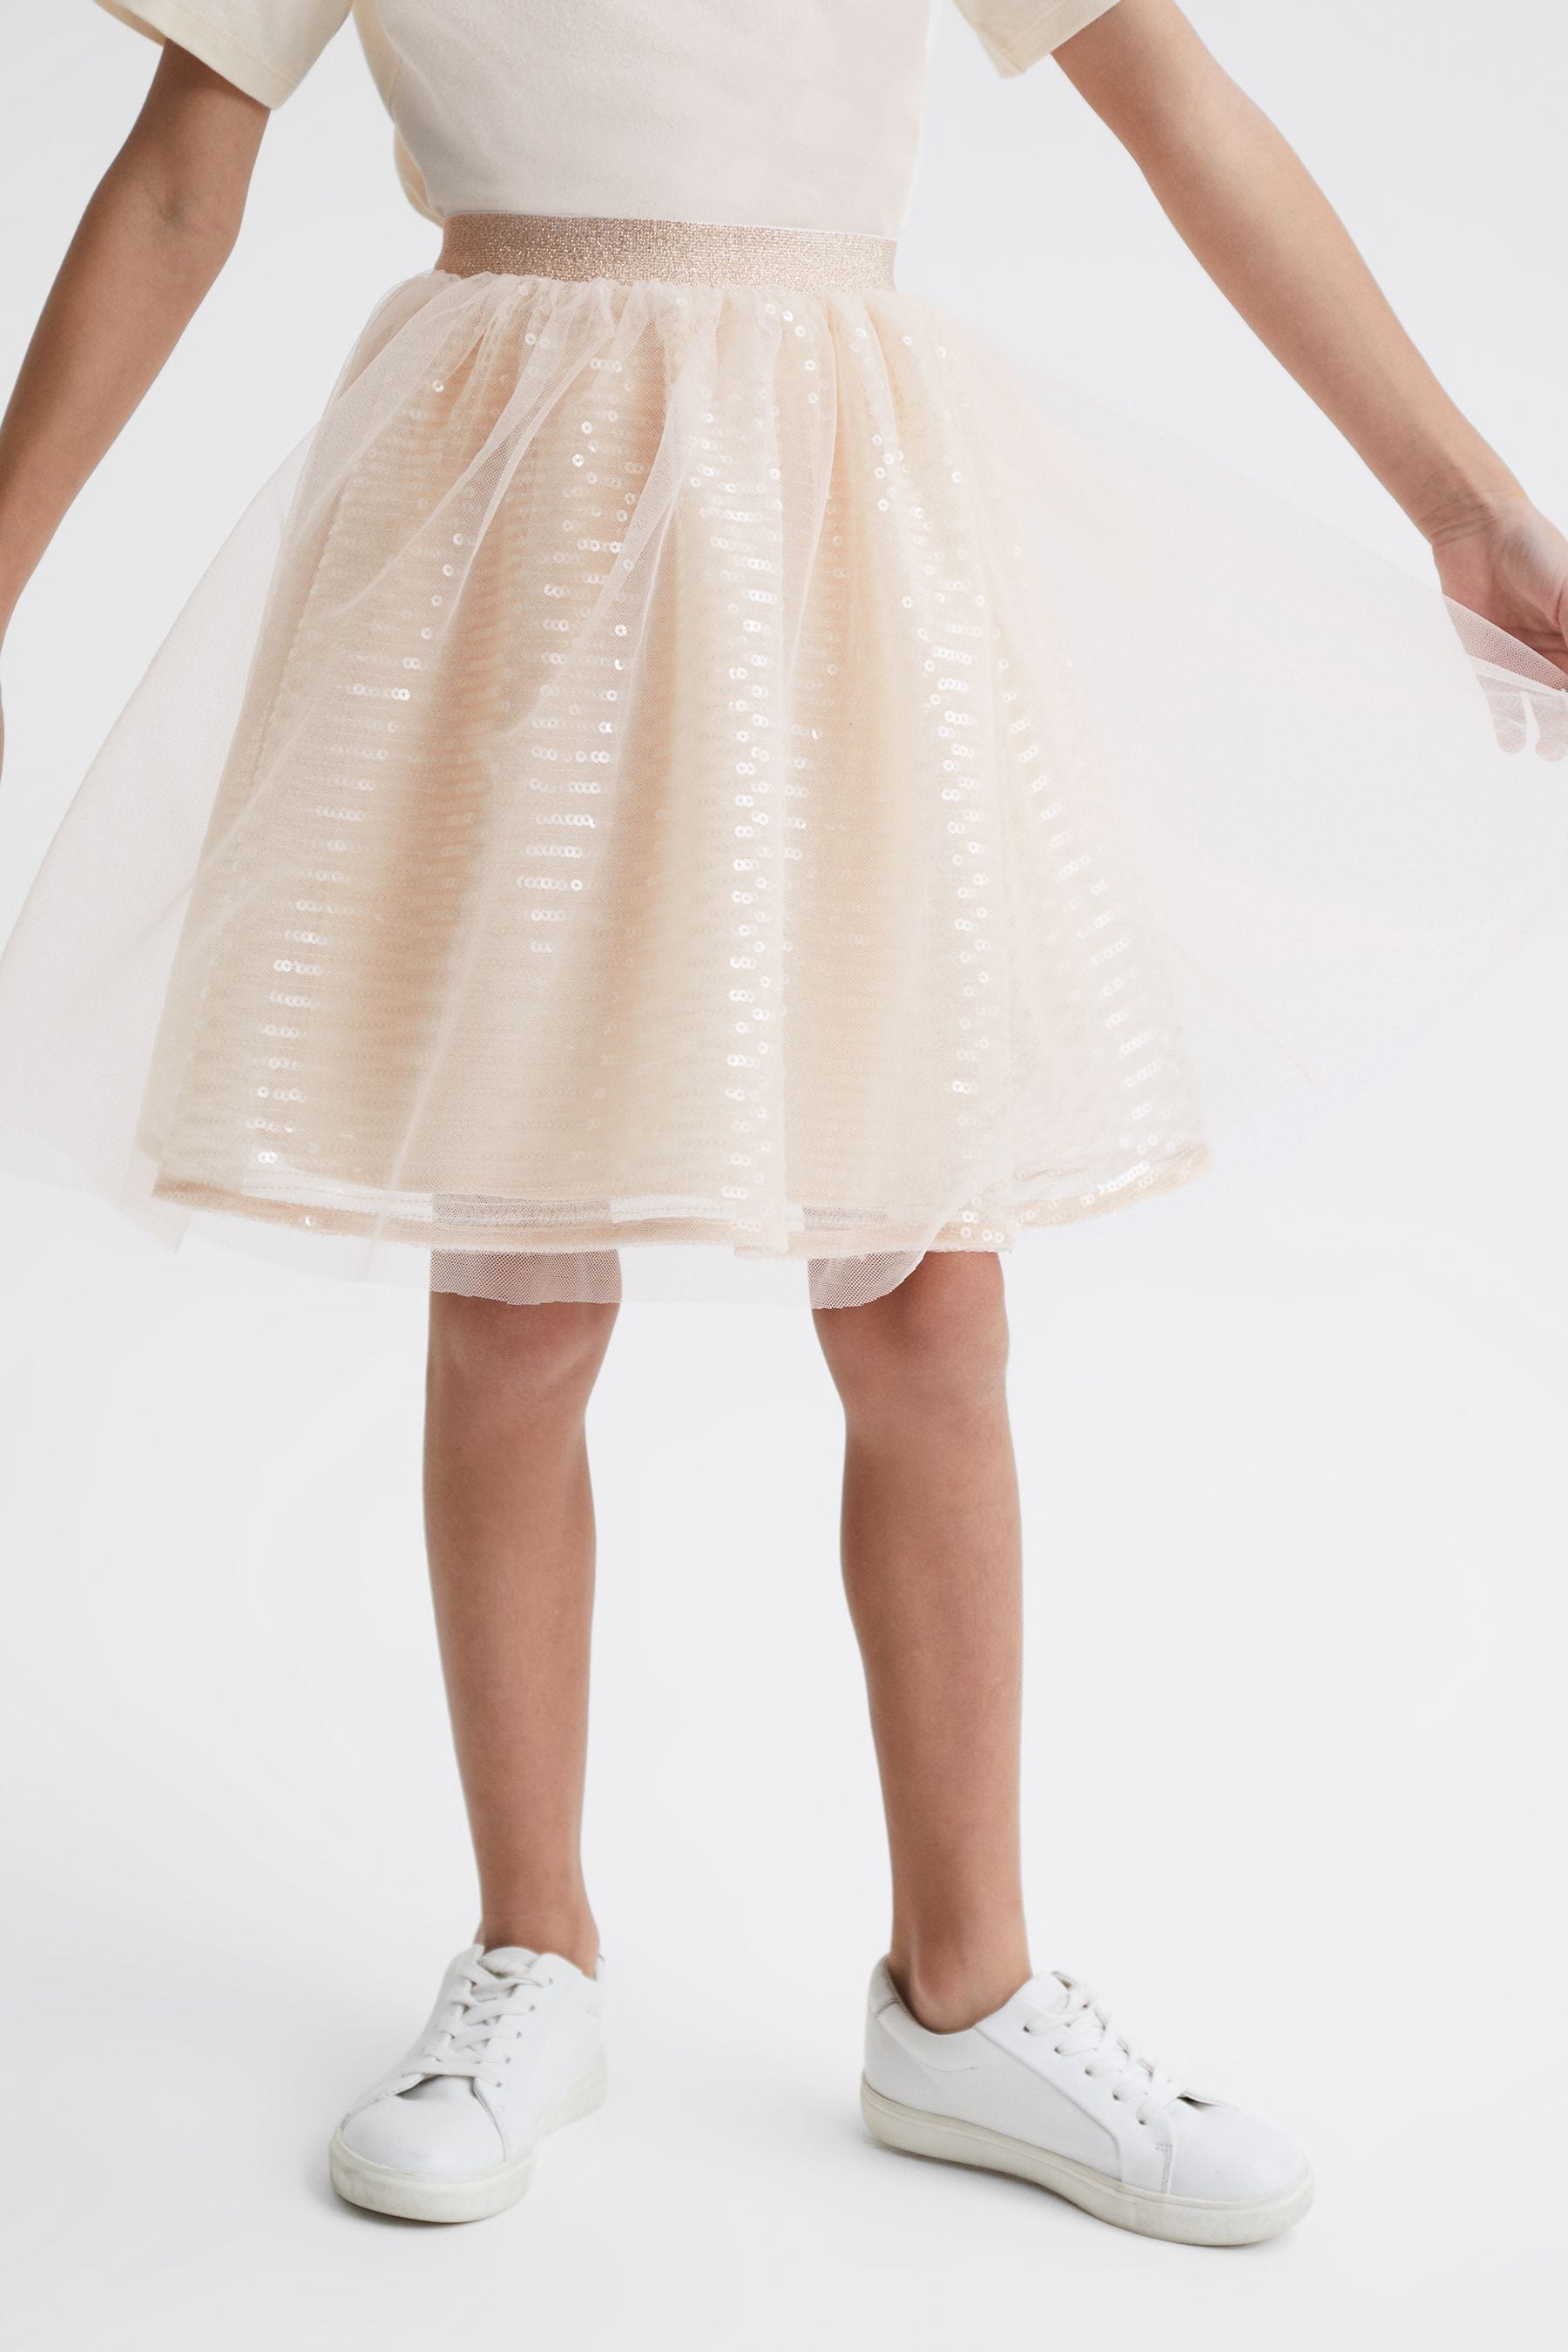 Reiss Kids' Charlotta - Pale Pink Junior Sequin Midi Skirt, Age 6-7 Years